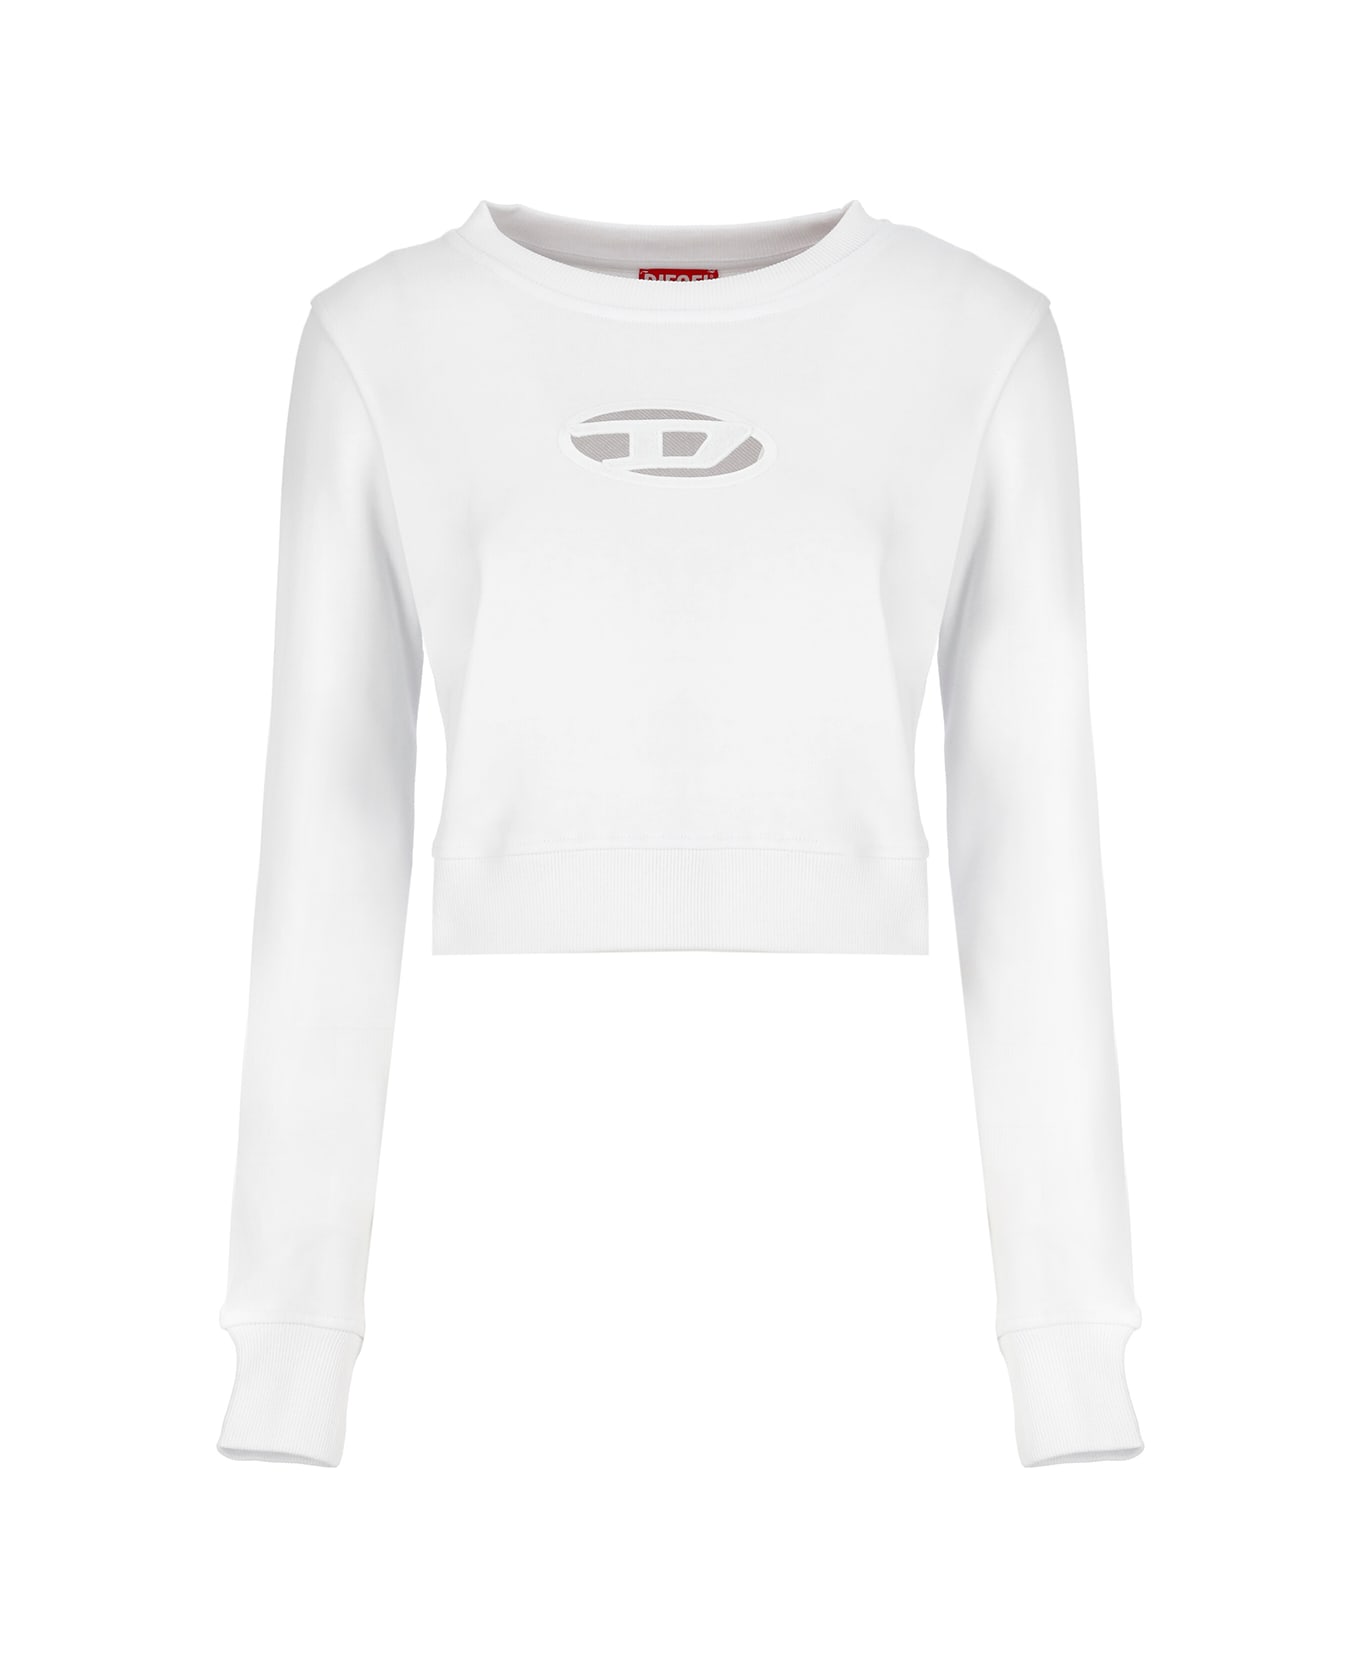 Diesel F-slimmy-od Sweatshirt - White